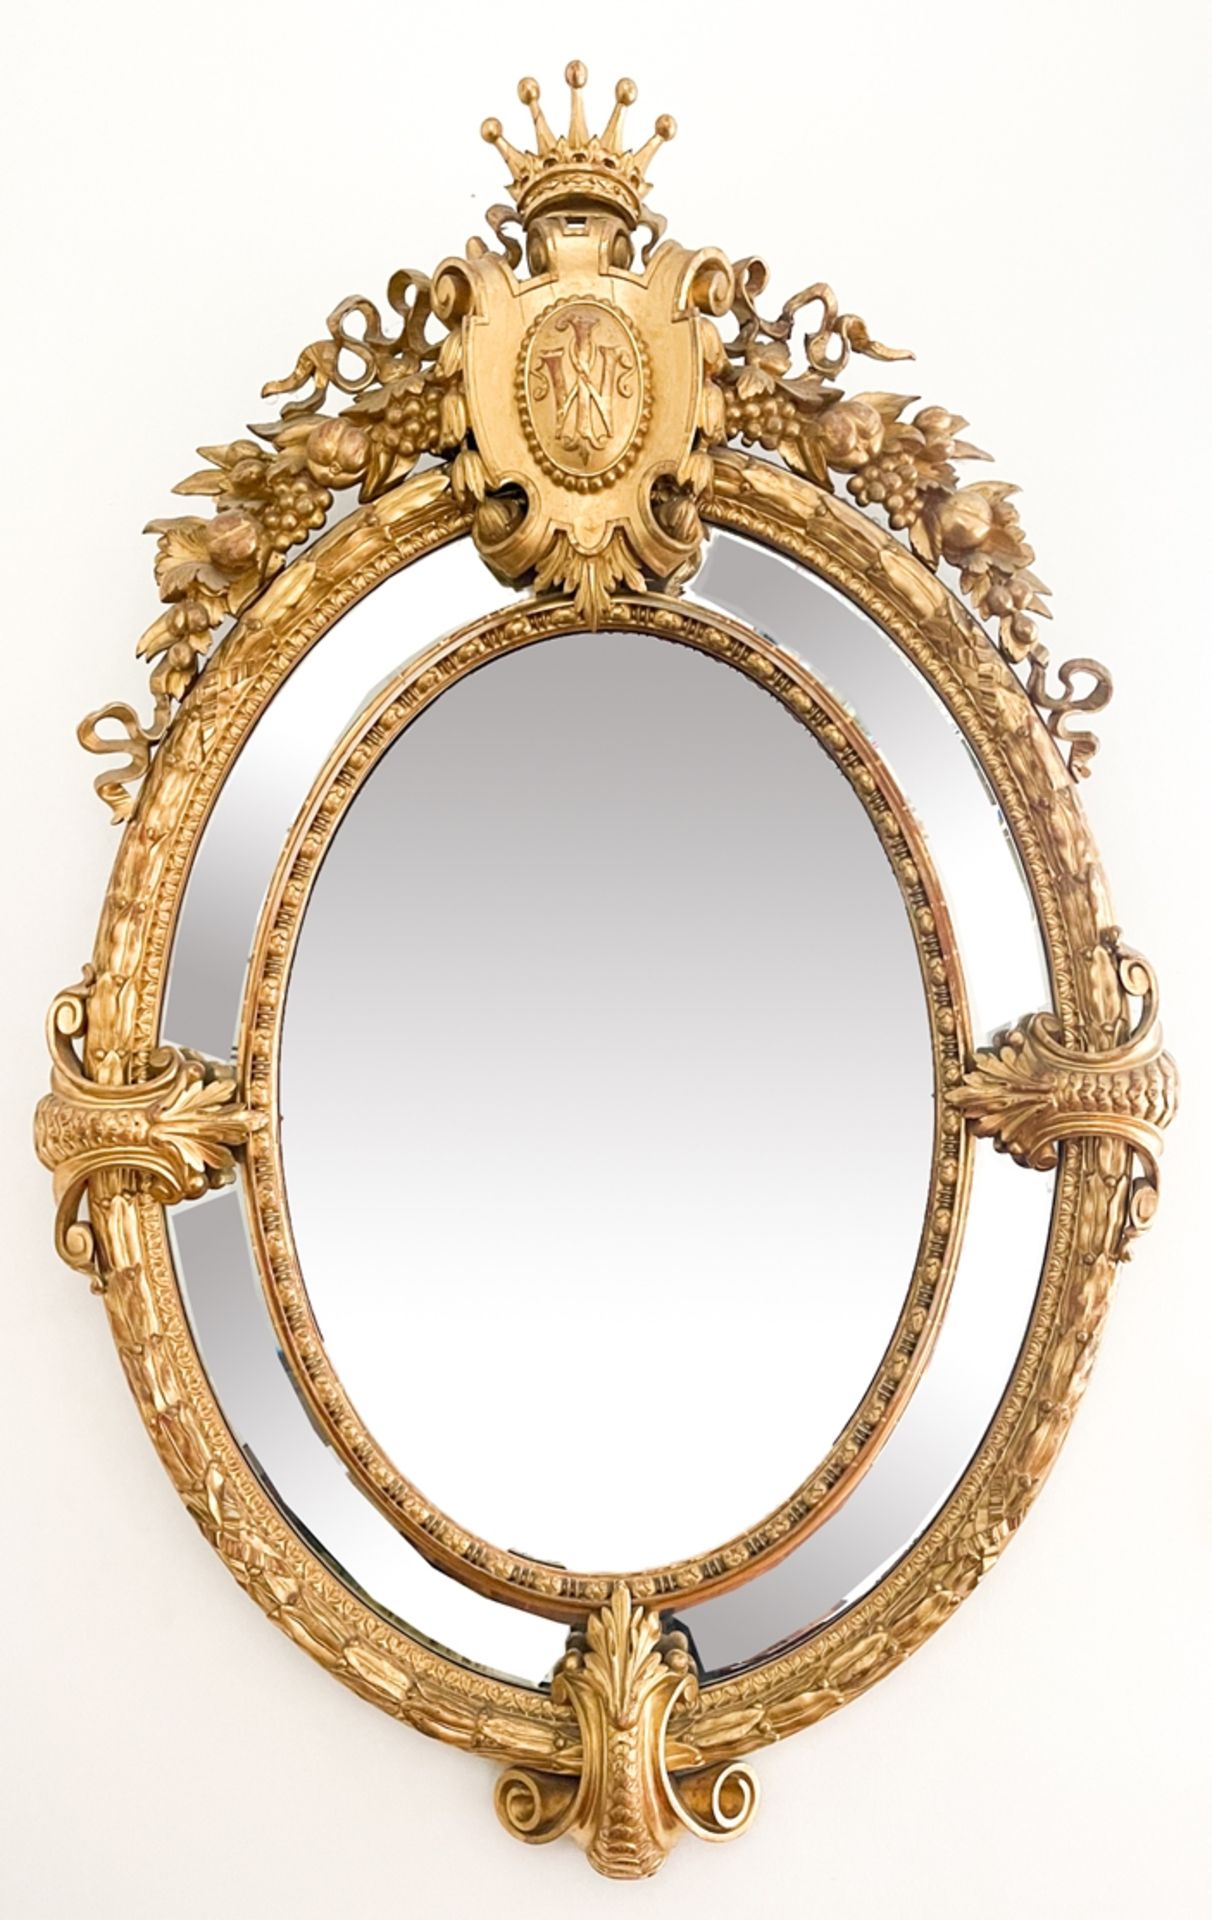 Goldener ovaler Prunkspiegel mit Krone und Wappen